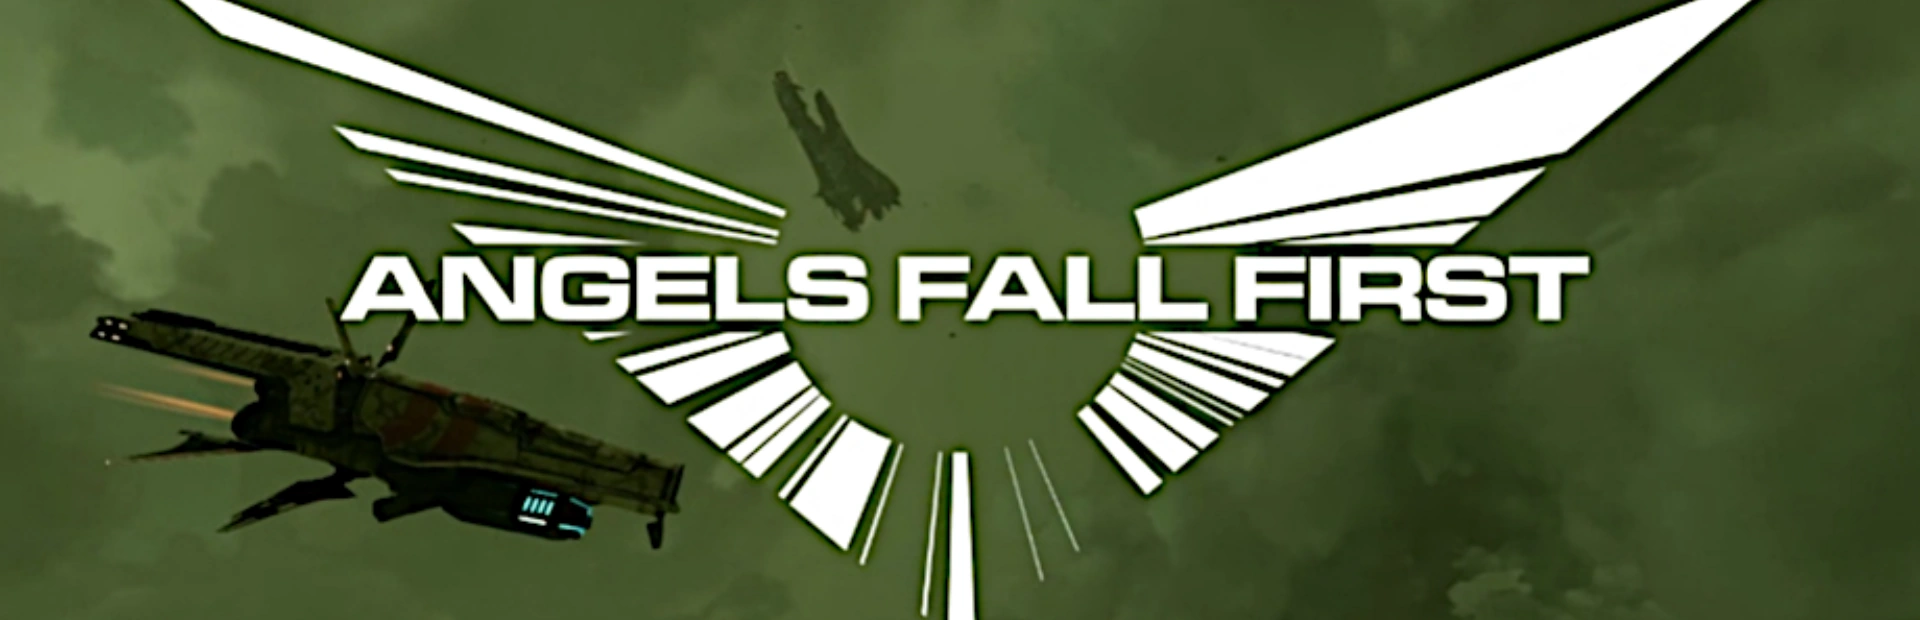 دانلود بازی Angels Fall First برای کامپیوتر | گیمباتو